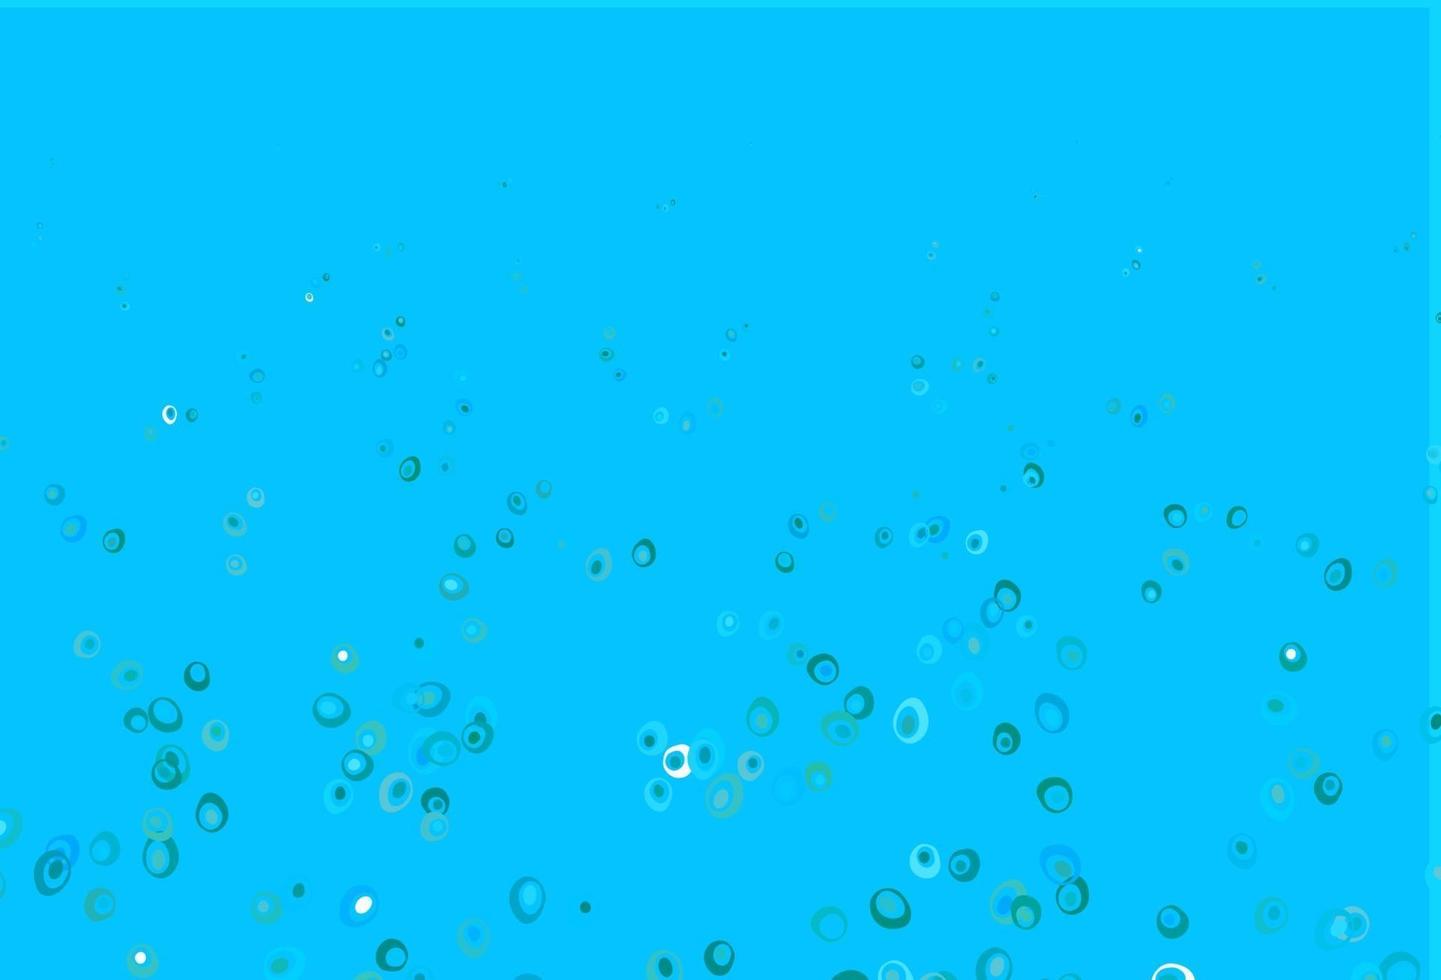 lichtblauw, groen vectorpatroon met bollen. vector